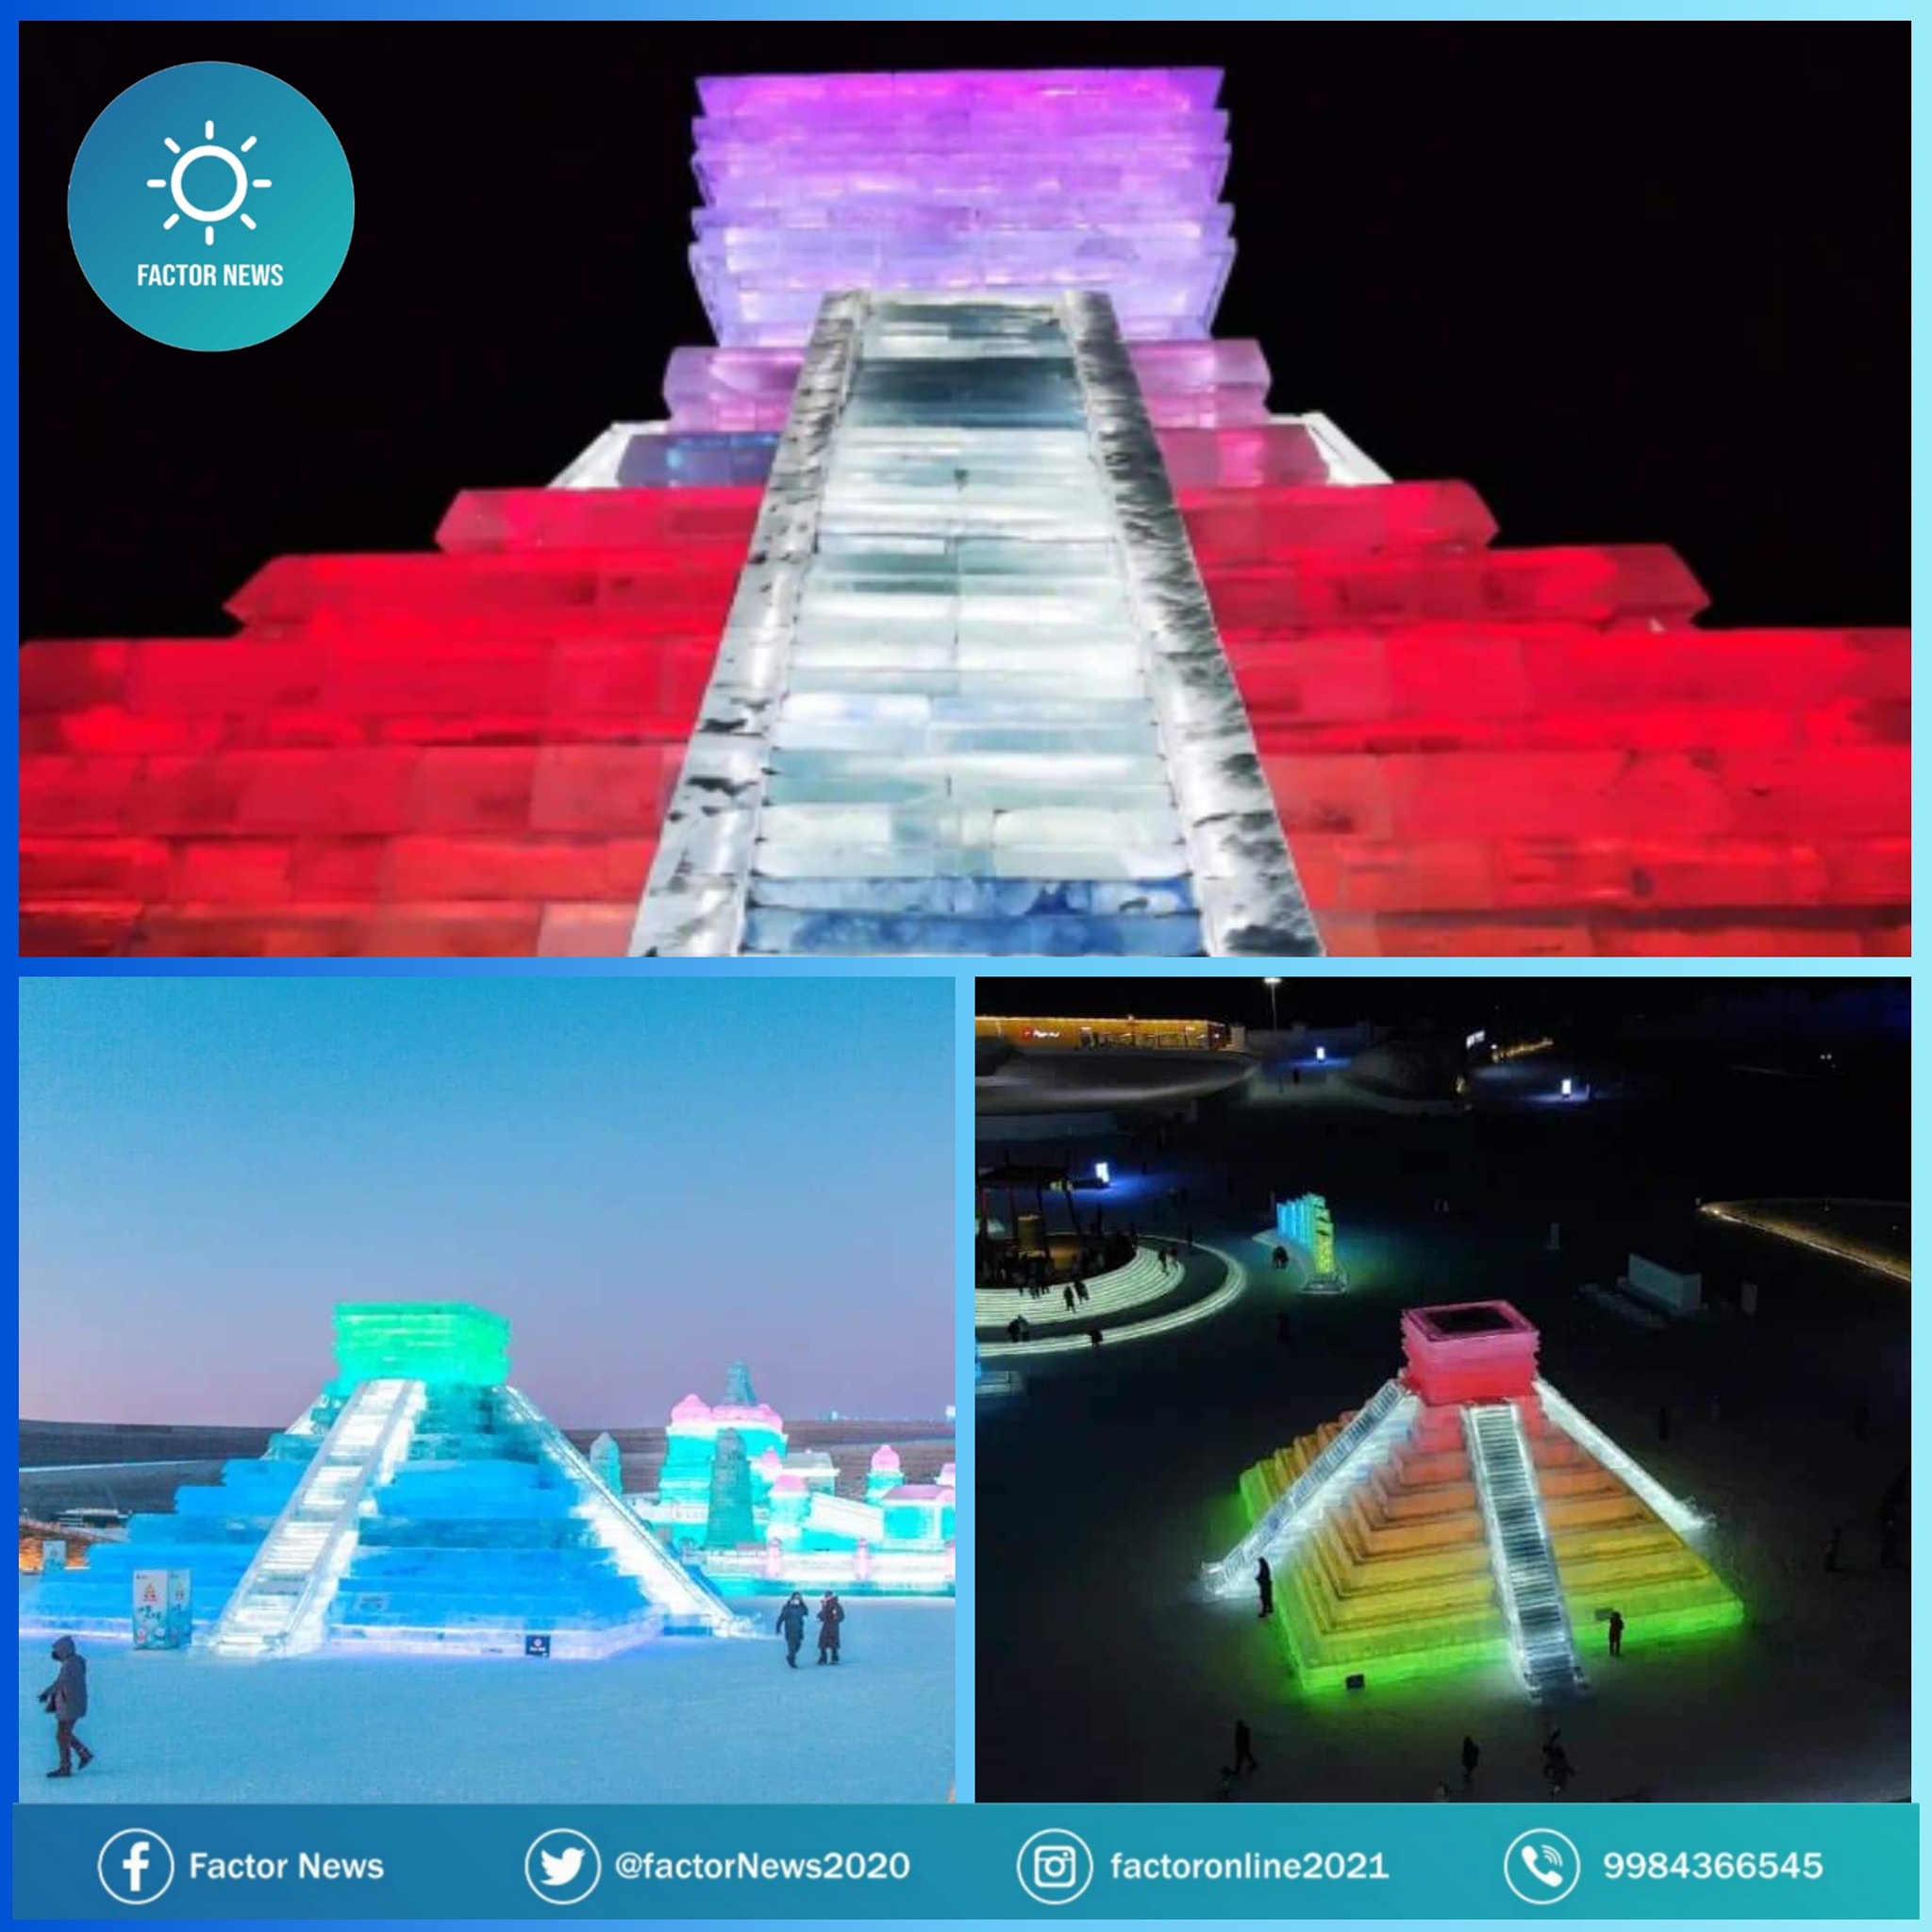 En el marco del Festival Internacional de Nieve y Hielo de Harbin, China, se instaló una réplica de la pirámide de Kukulcán.